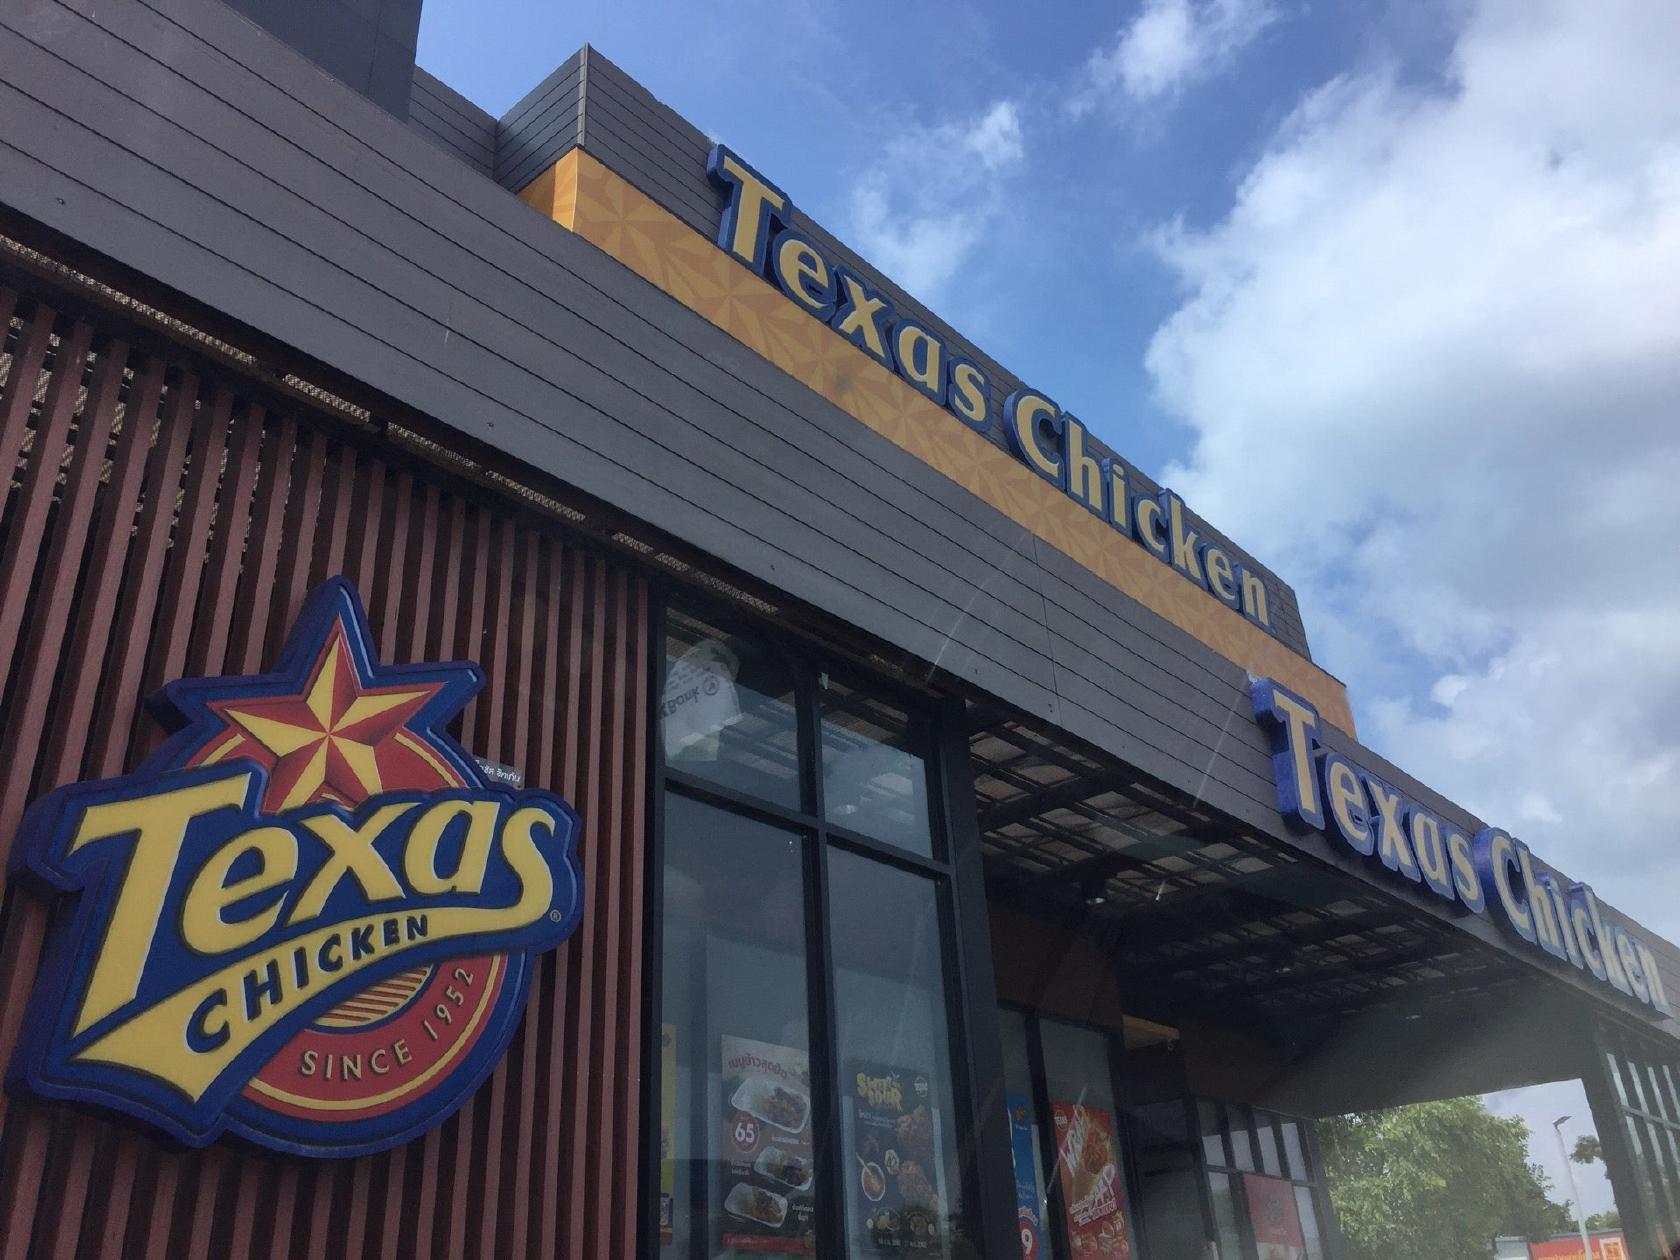 Pengkalan texas chepa chicken Contact Texas